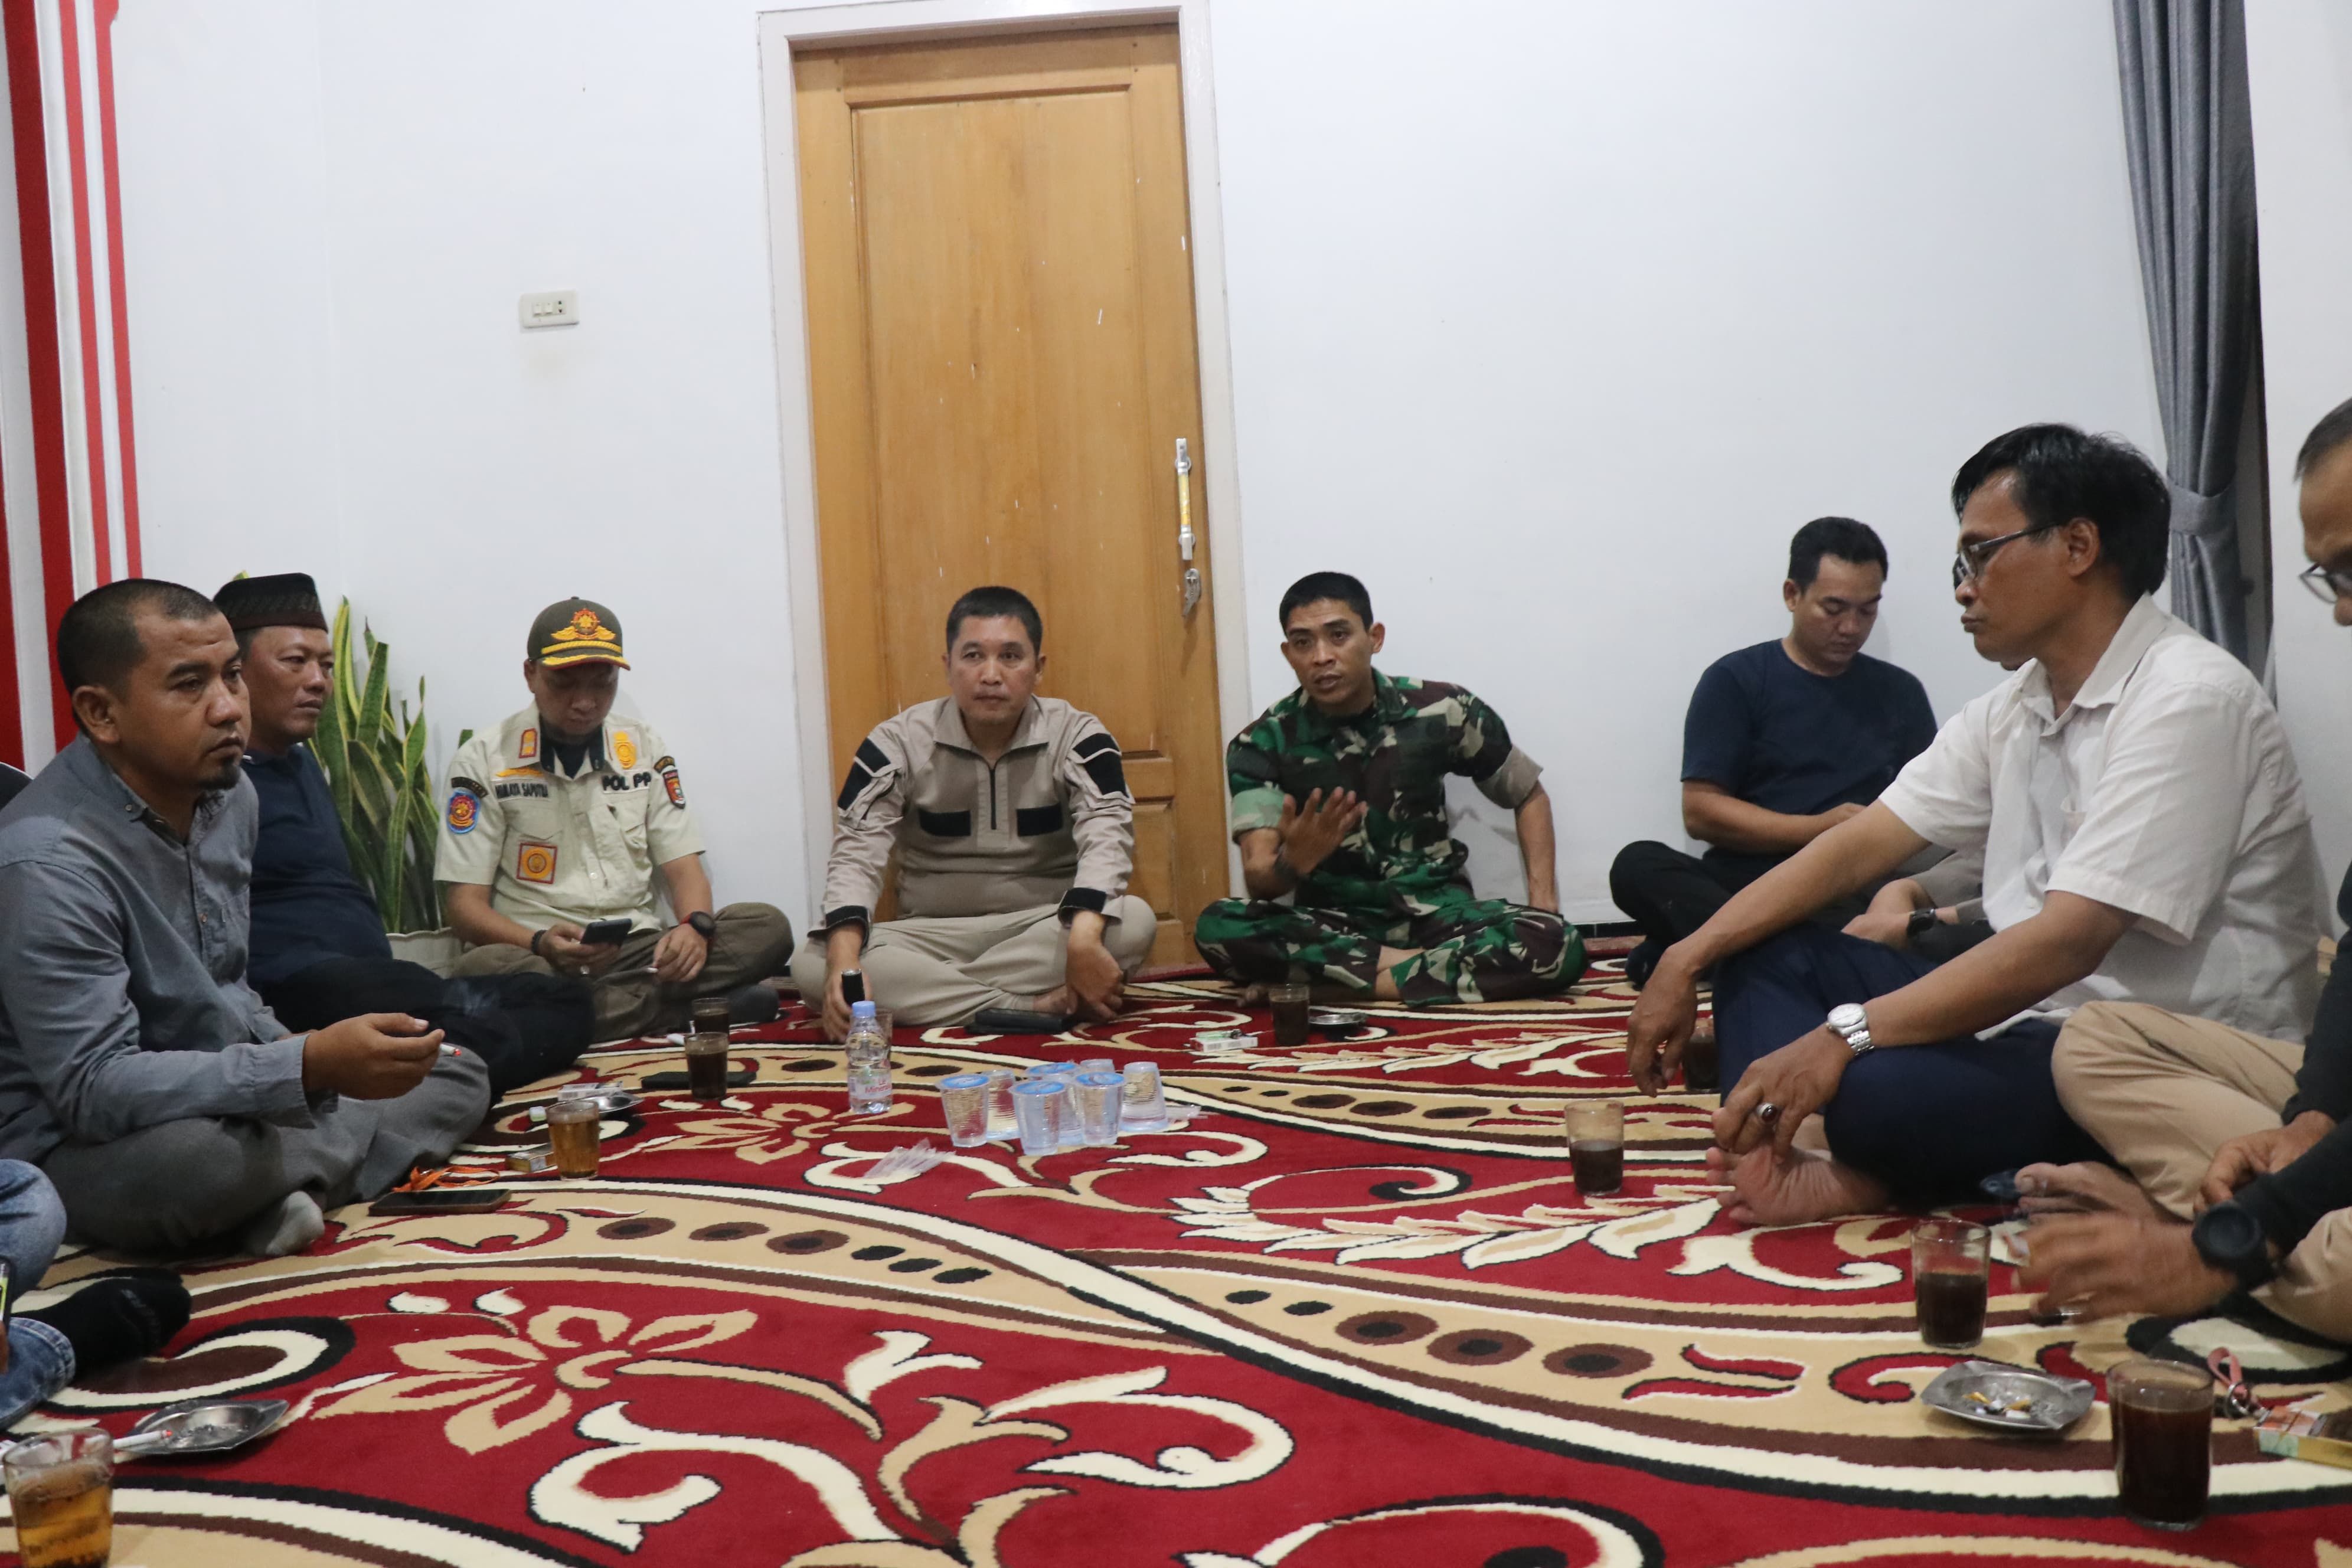 Kapolres Lampung Barat, Polda Lampung, AKBP Ryky Widya Muharam dan Dandim 0422 Letkol Inf Rinto Wijaya saat bermediasi dengan warga Suoh